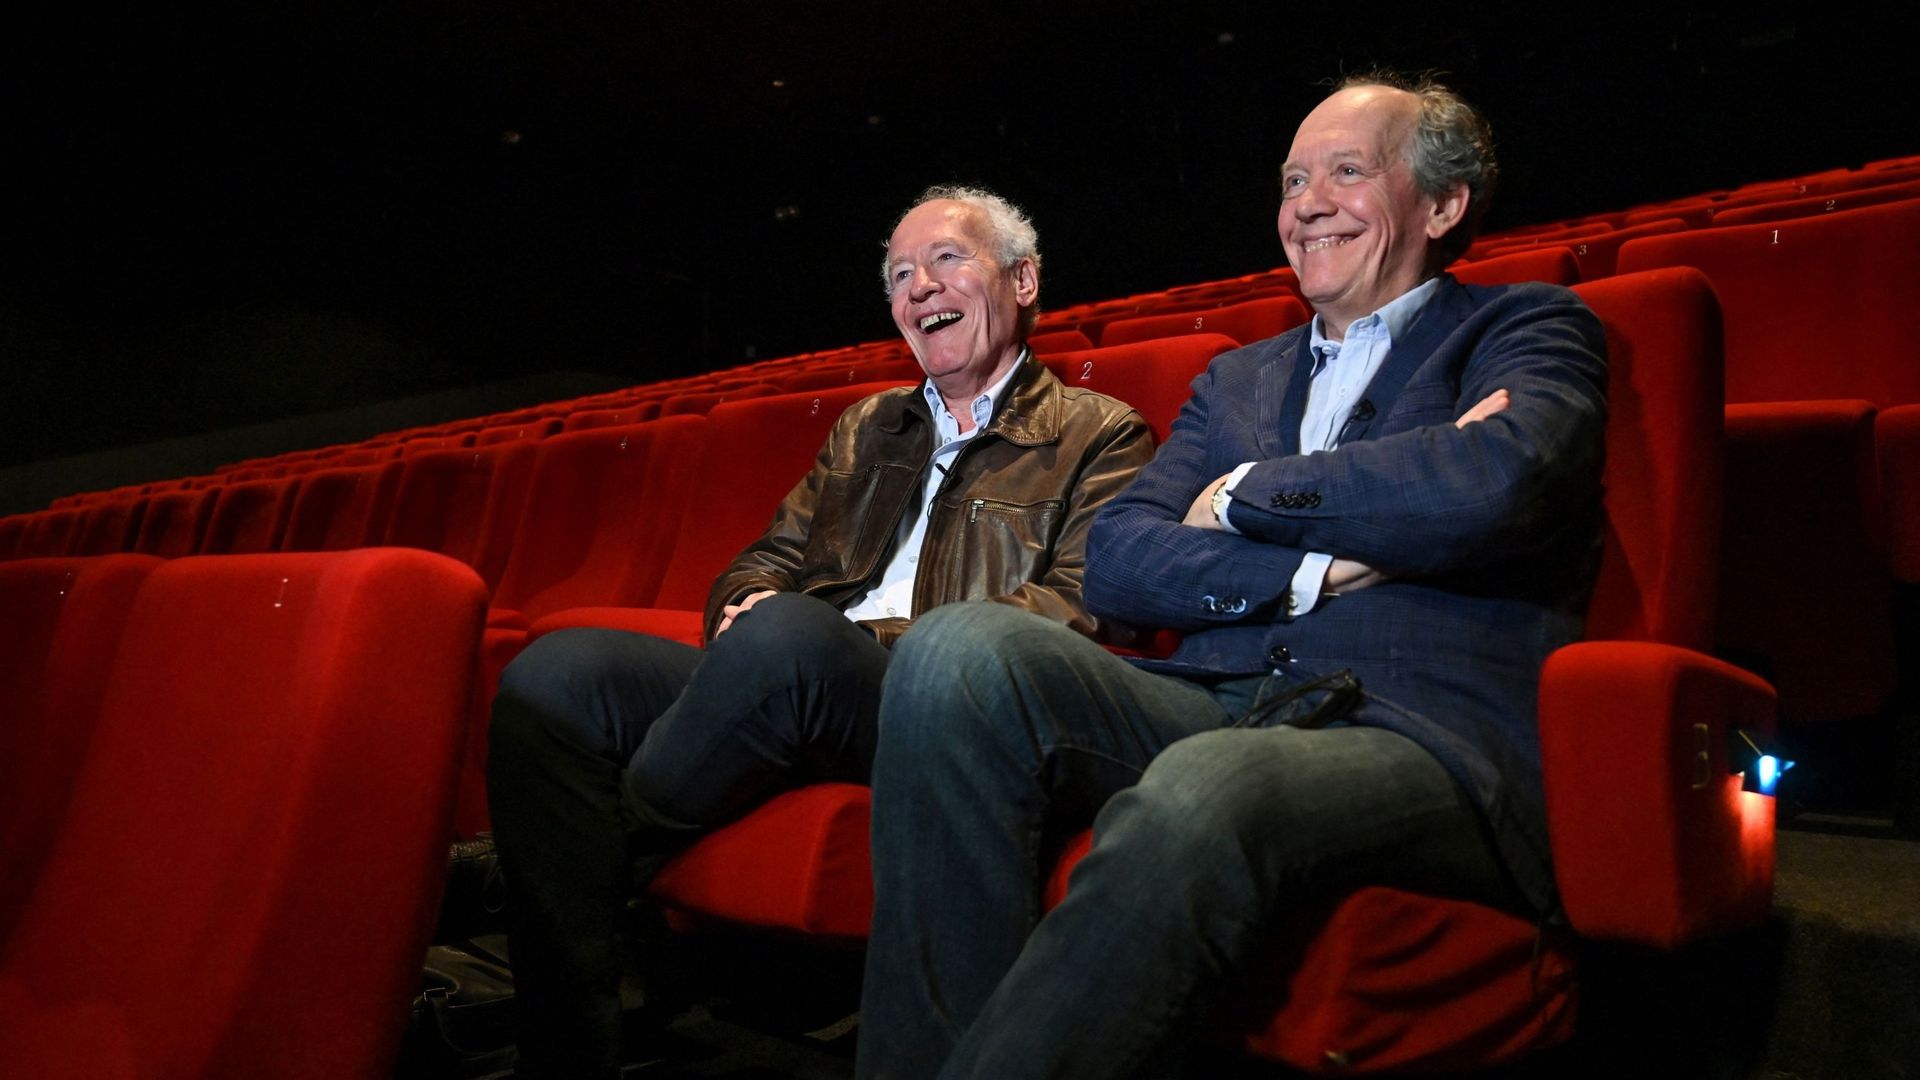 Les réalisateurs belges Jean-Pierre et Luc Dardenne seront représentés au Festival de Cannes via leur société de production "Les films du fleuve", impliquée dans "The Old Oak" du Britannique Ken Loach.